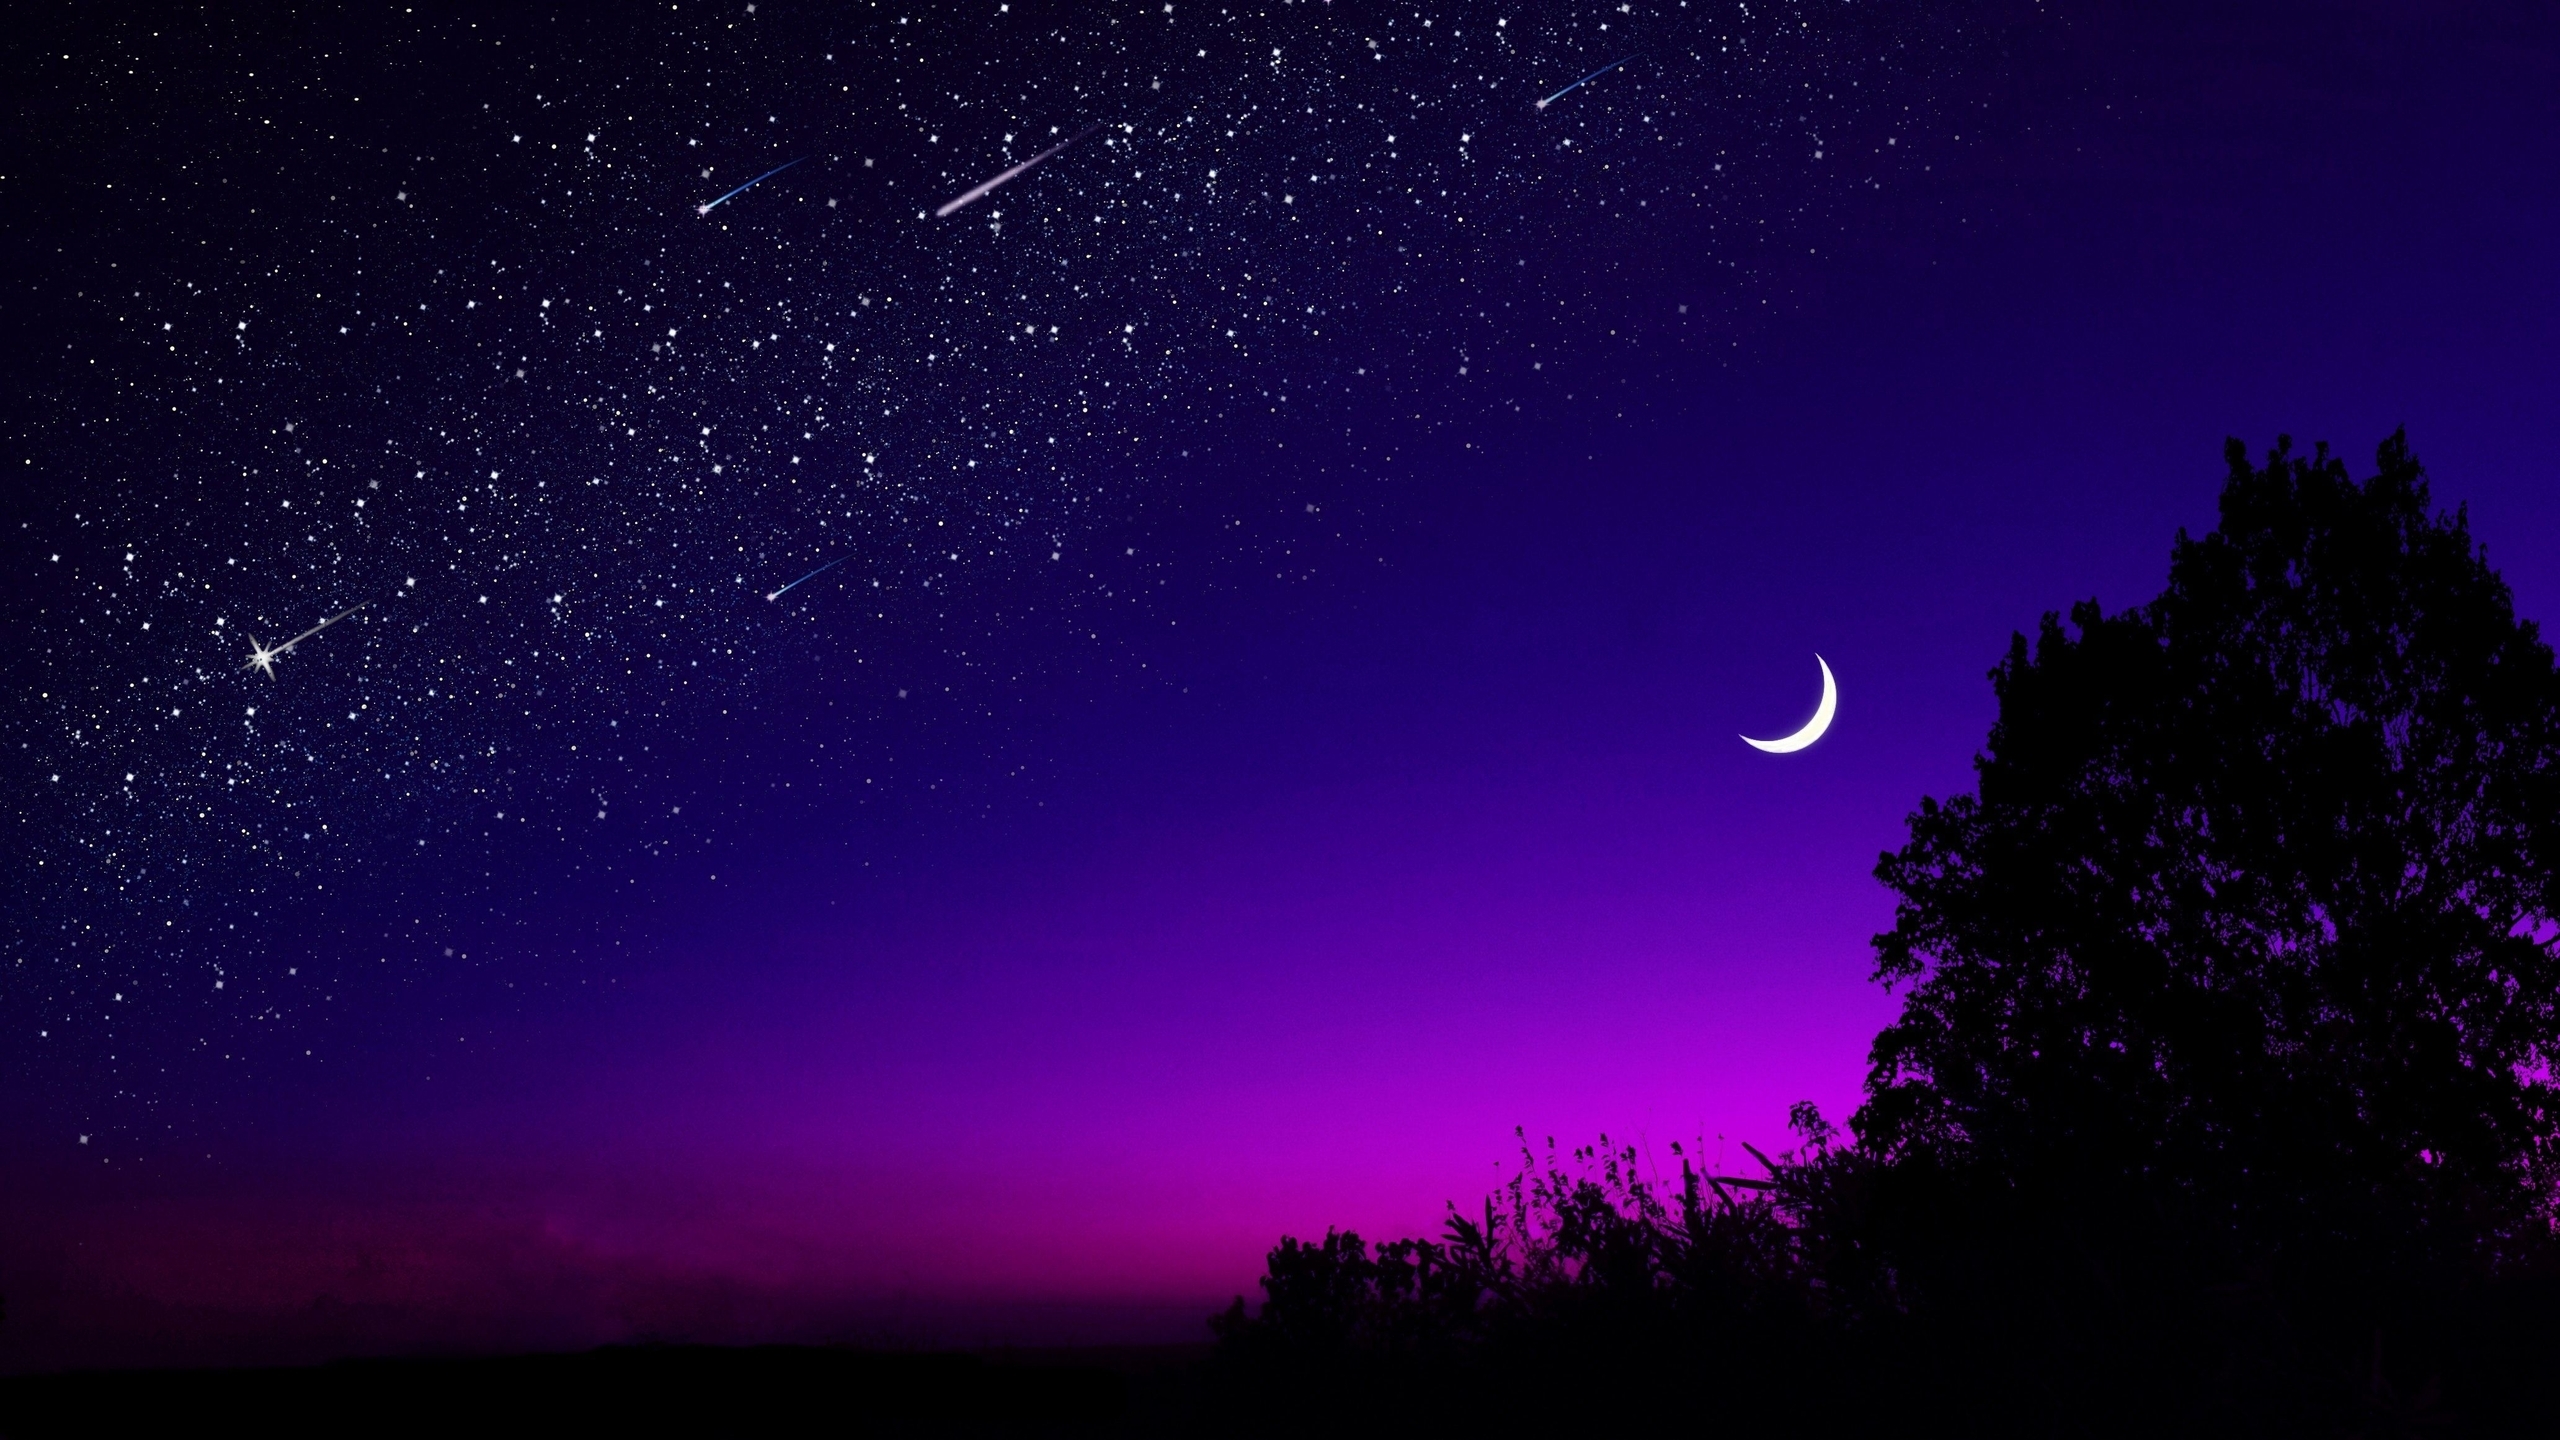 Скачать обои и картинки ночь, звёзды, луна, месяц, свет, закат, силуэт, дерево, горизонт, небо для рабочего стола в разрешении 2560x1440